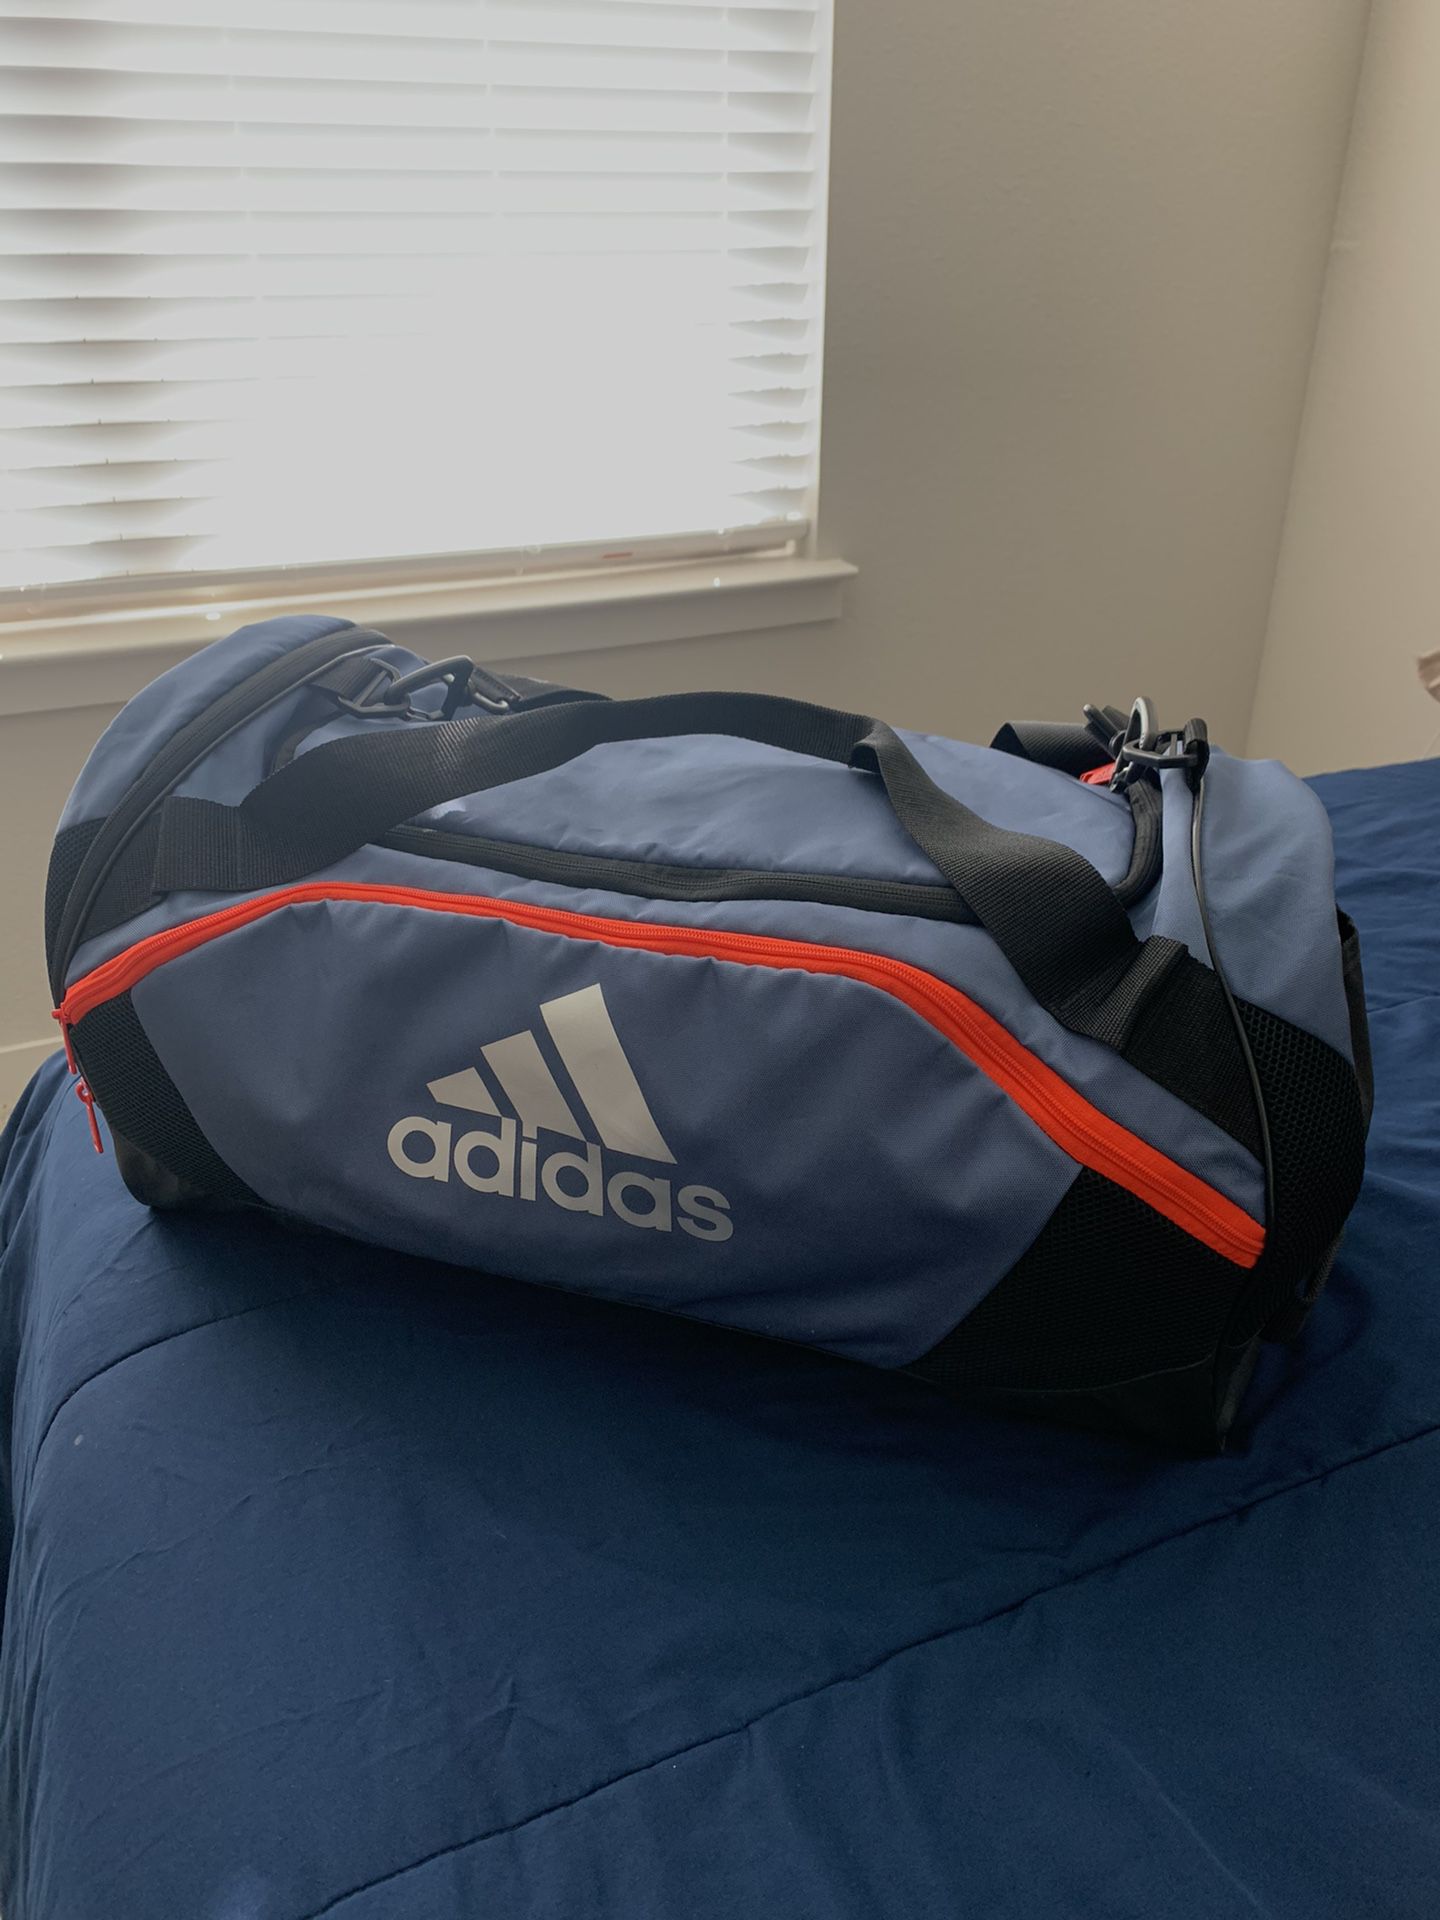 Adidas duffel bag